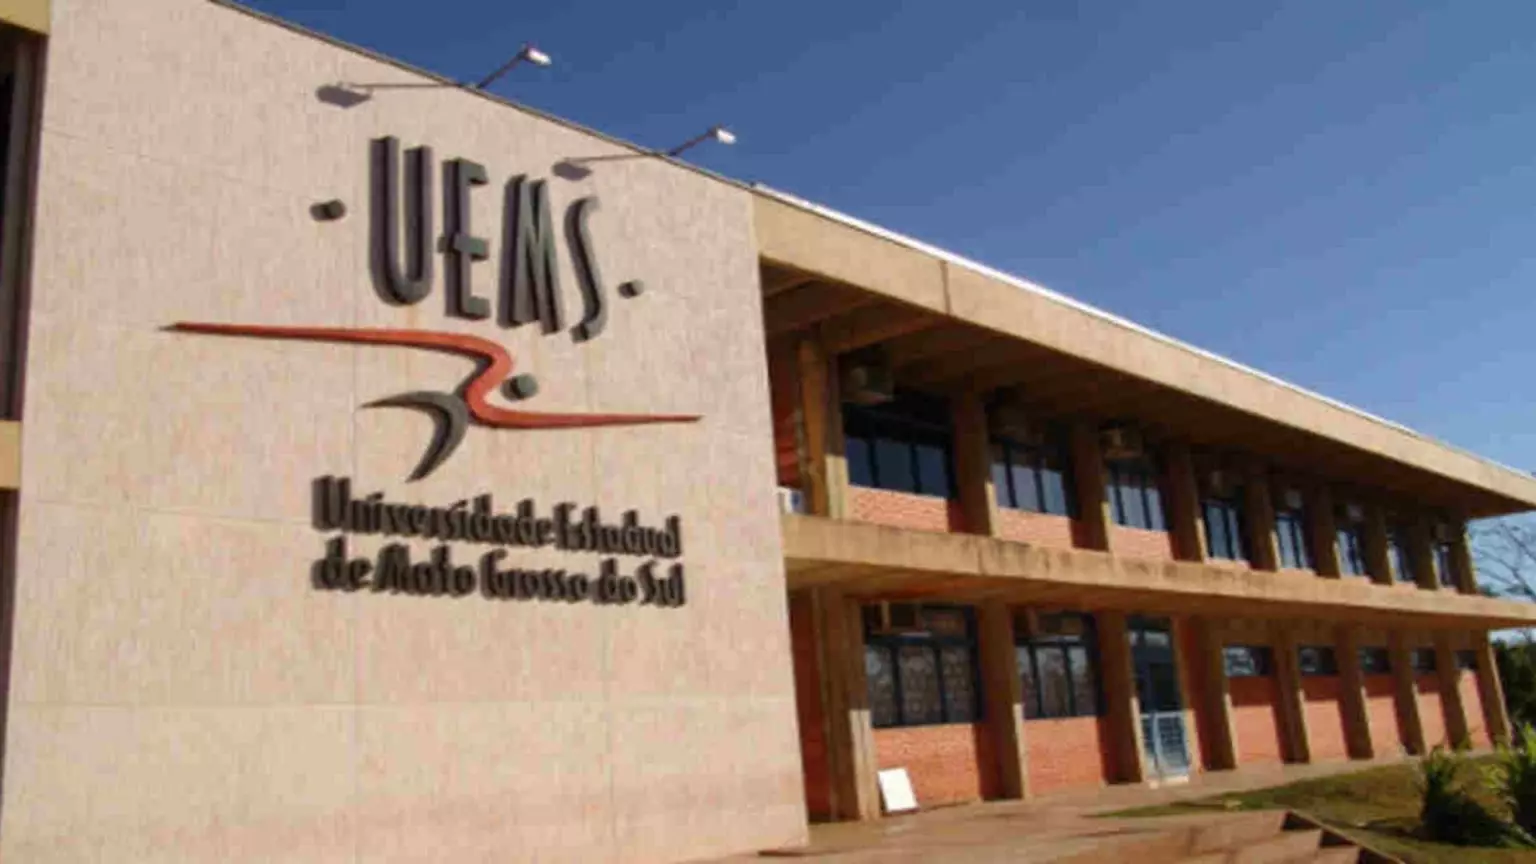 Cassilândia: UEMS divulga resultado final de concurso para contratação de professores em 14 cidades